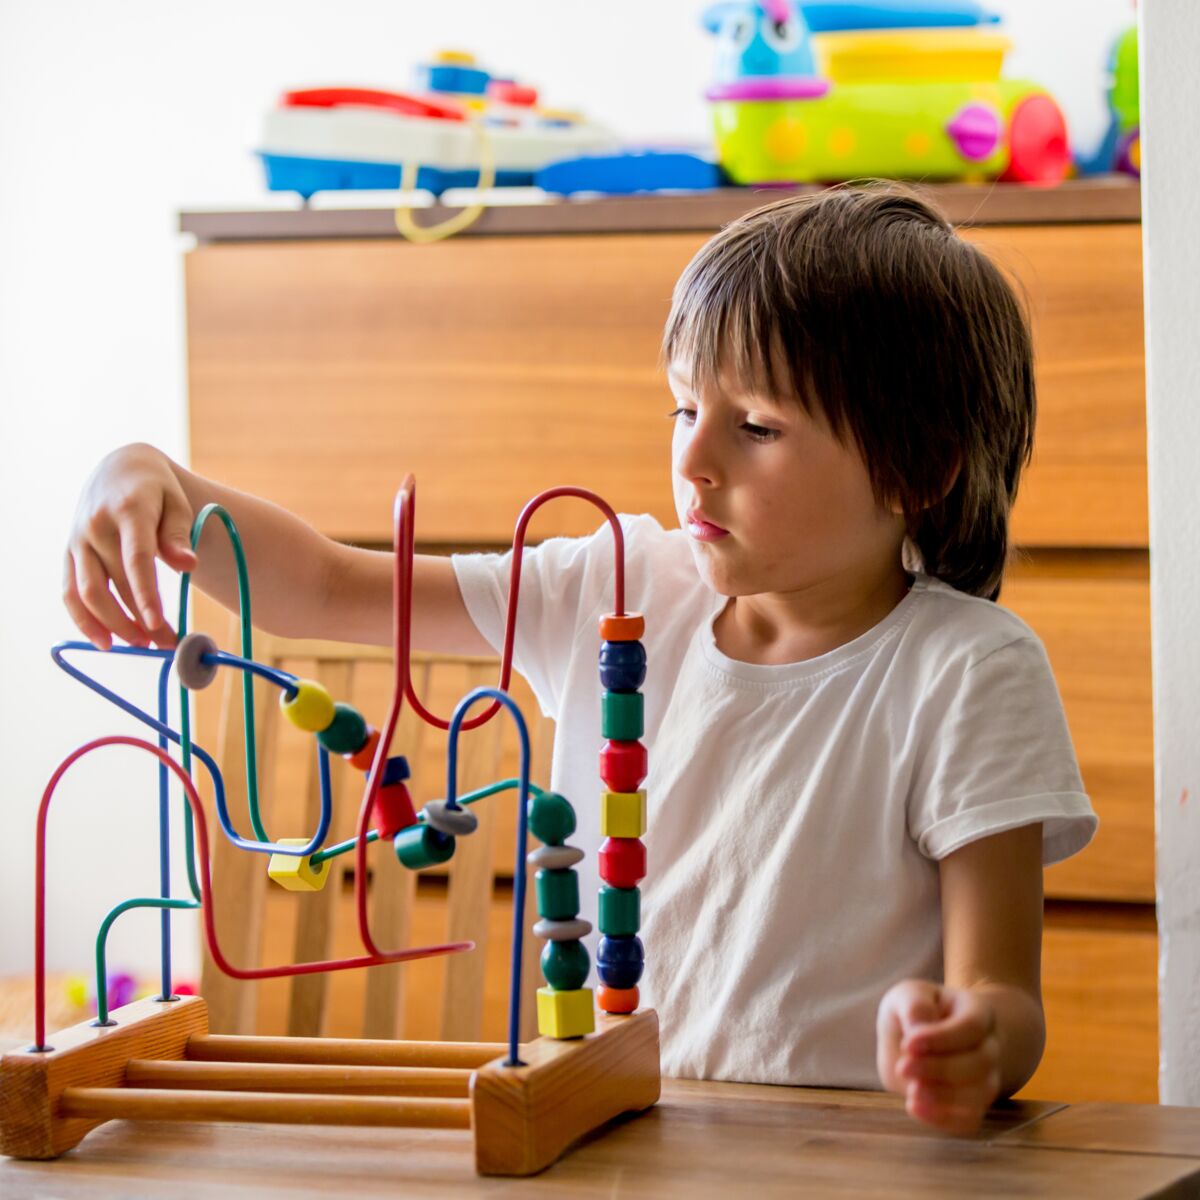 Pédagogie Montessori : 4 activités à réaliser